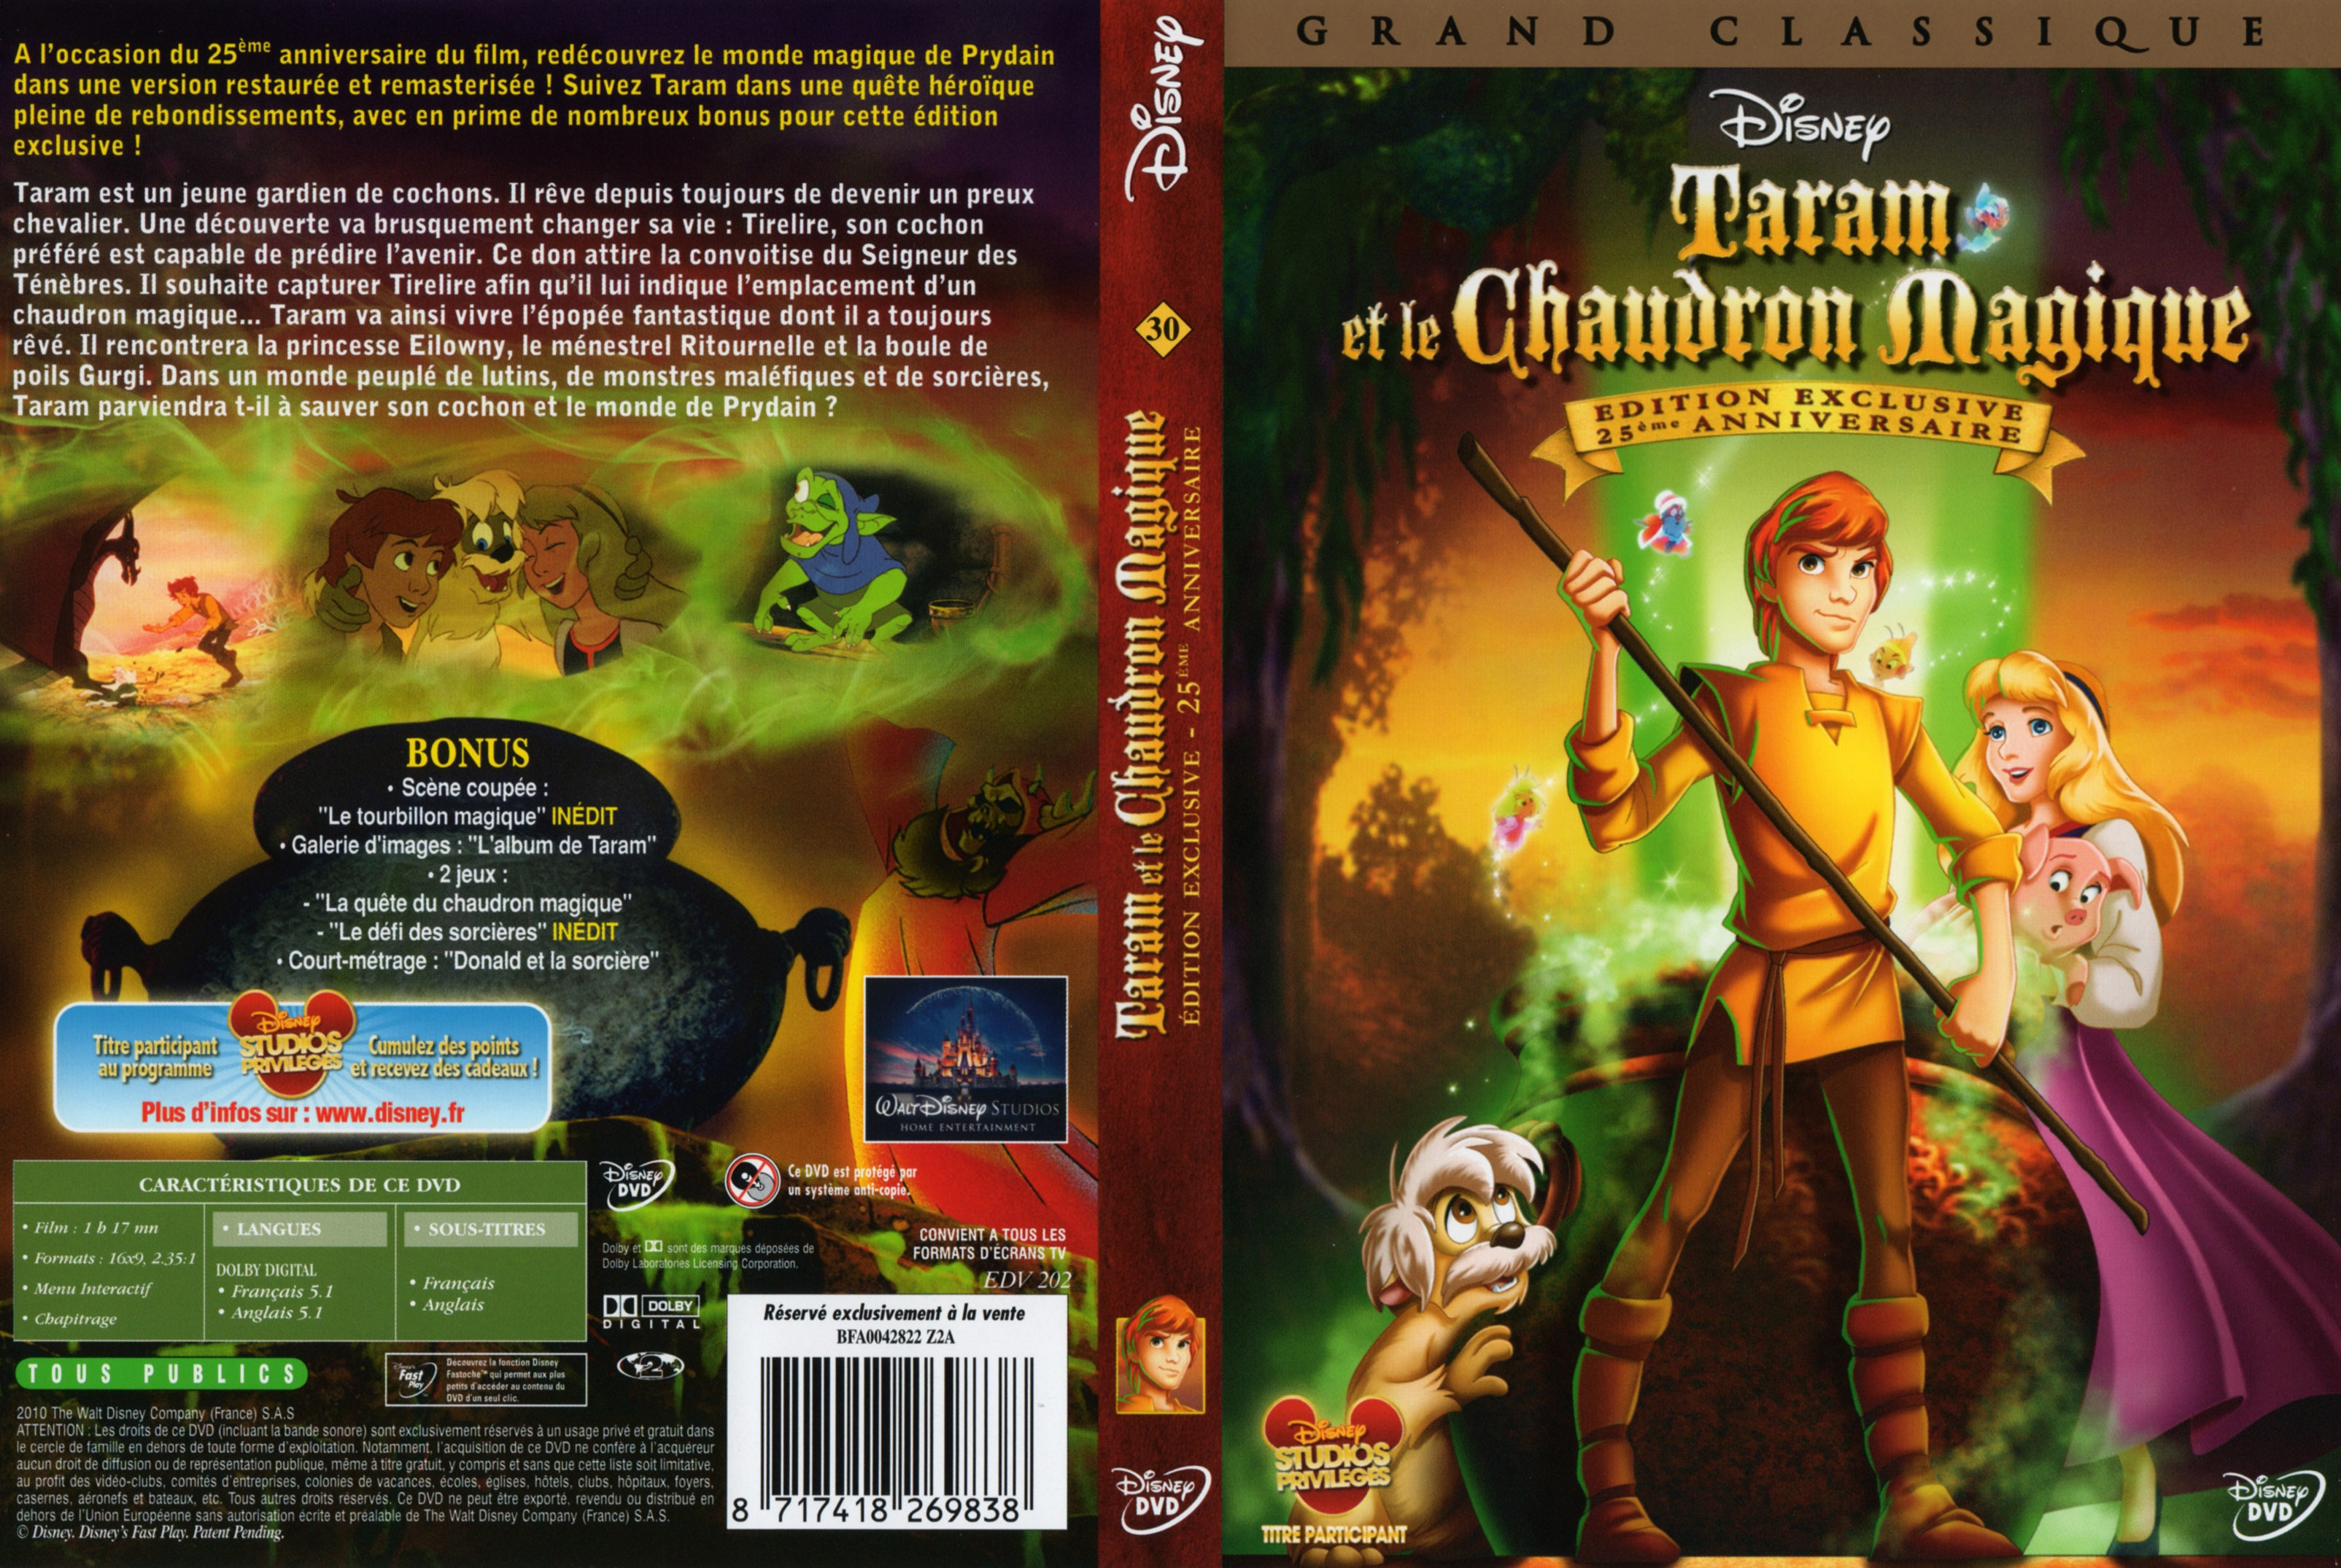 Jaquette DVD Taram et le chaudron magique v2